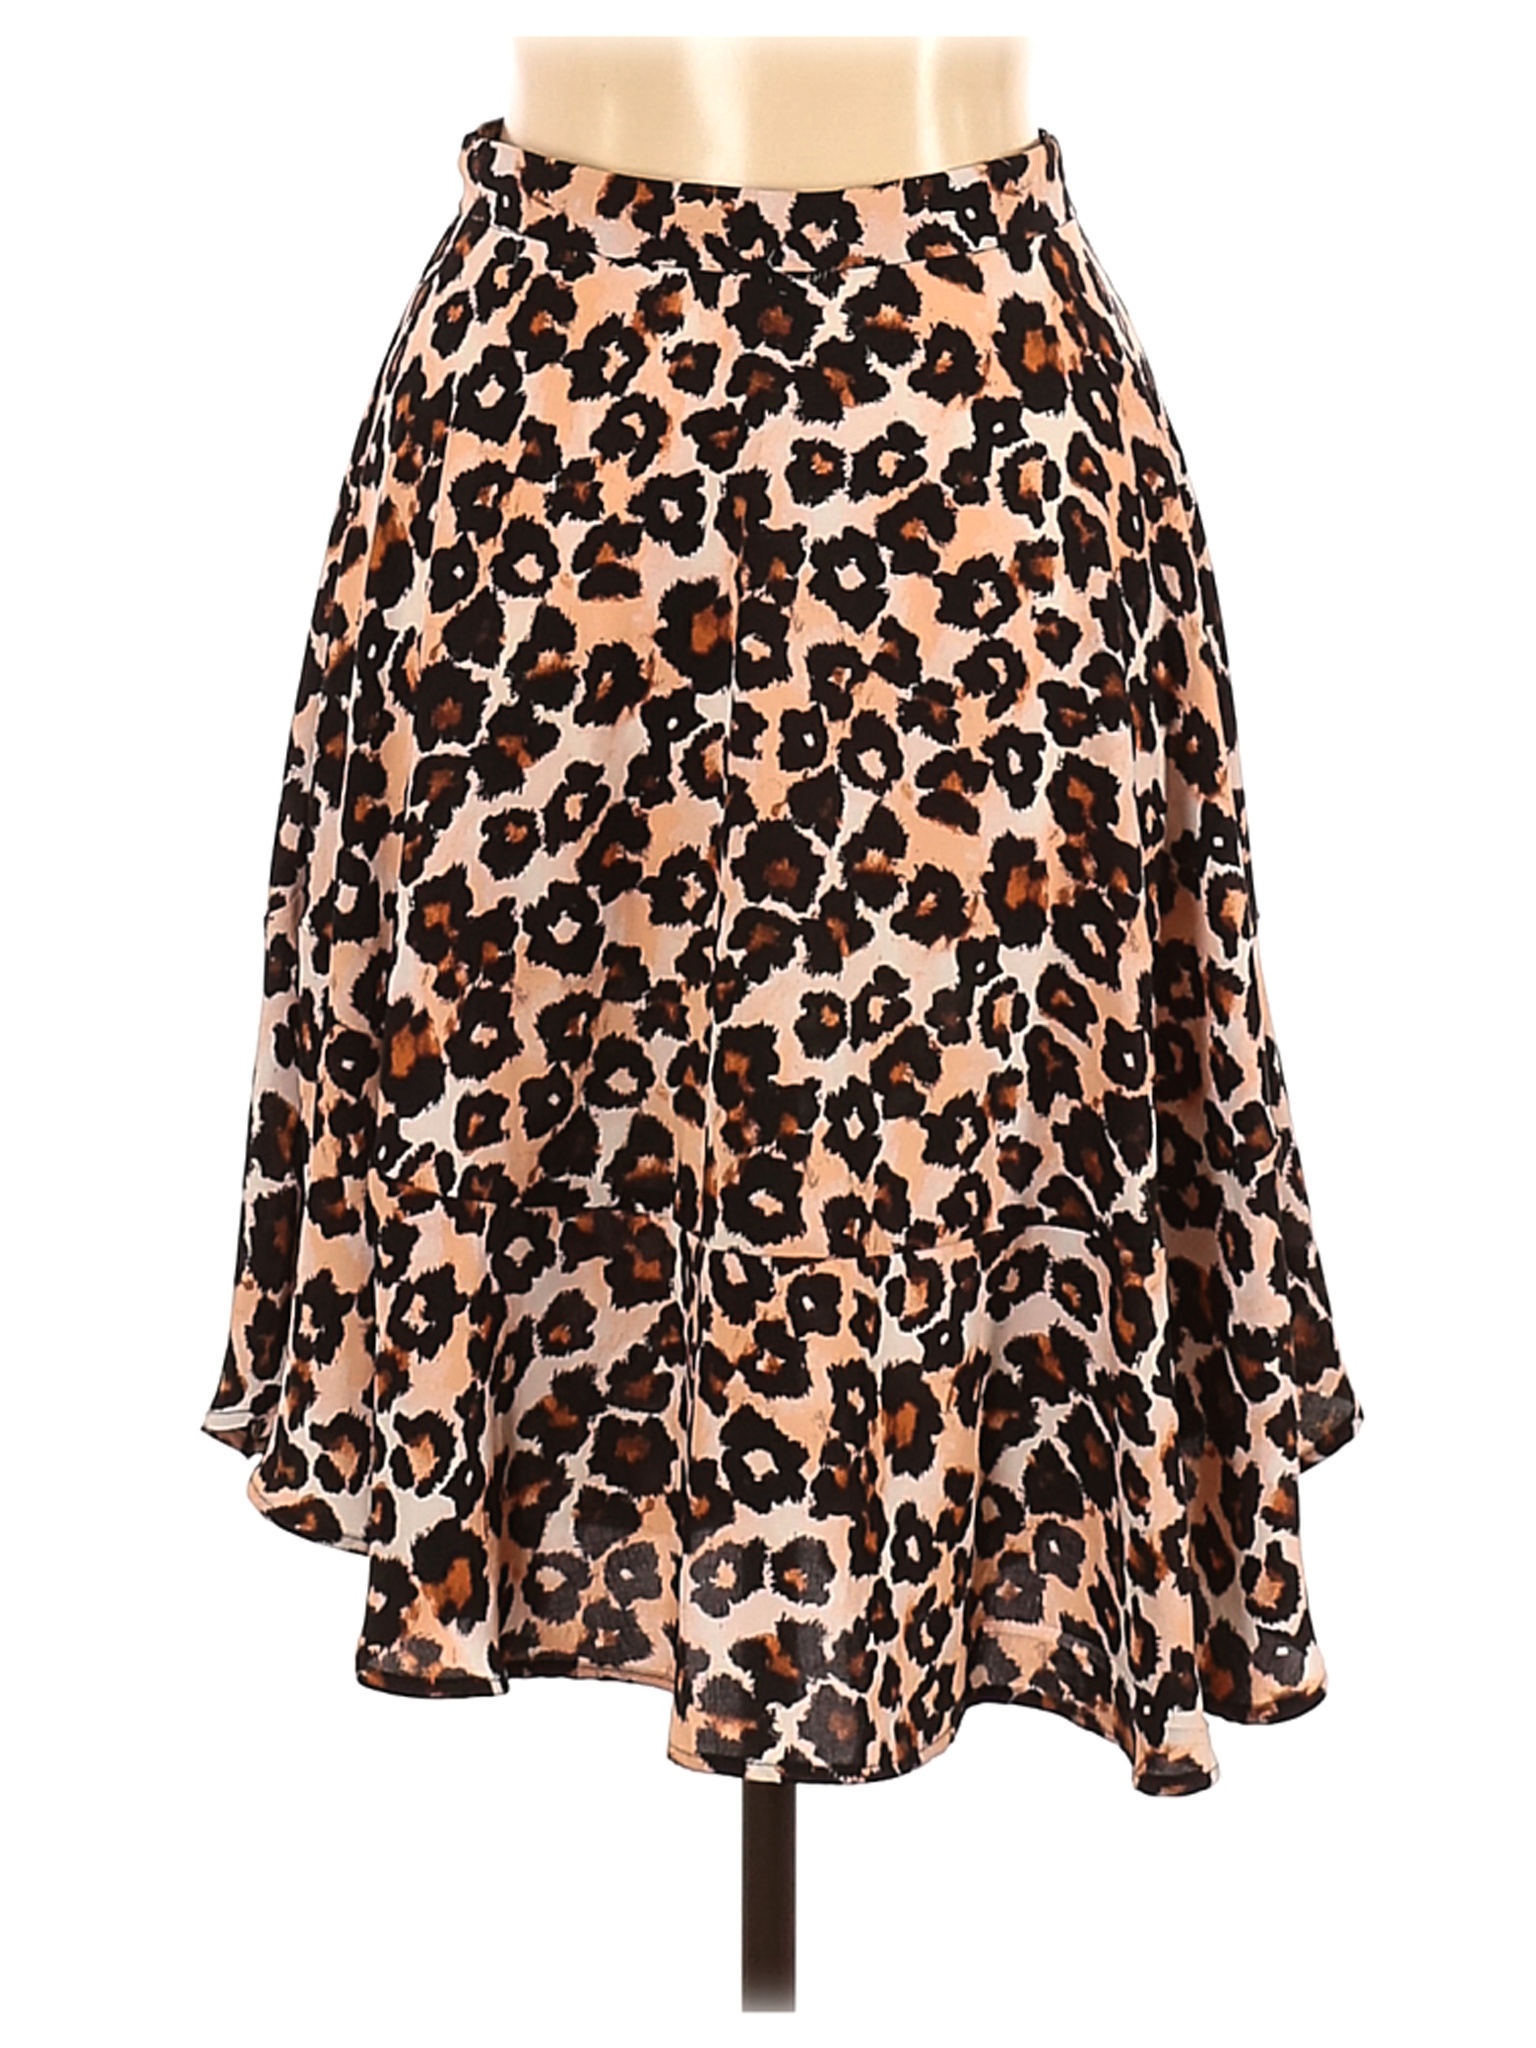 H&M Women Black Casual Skirt 10 | eBay